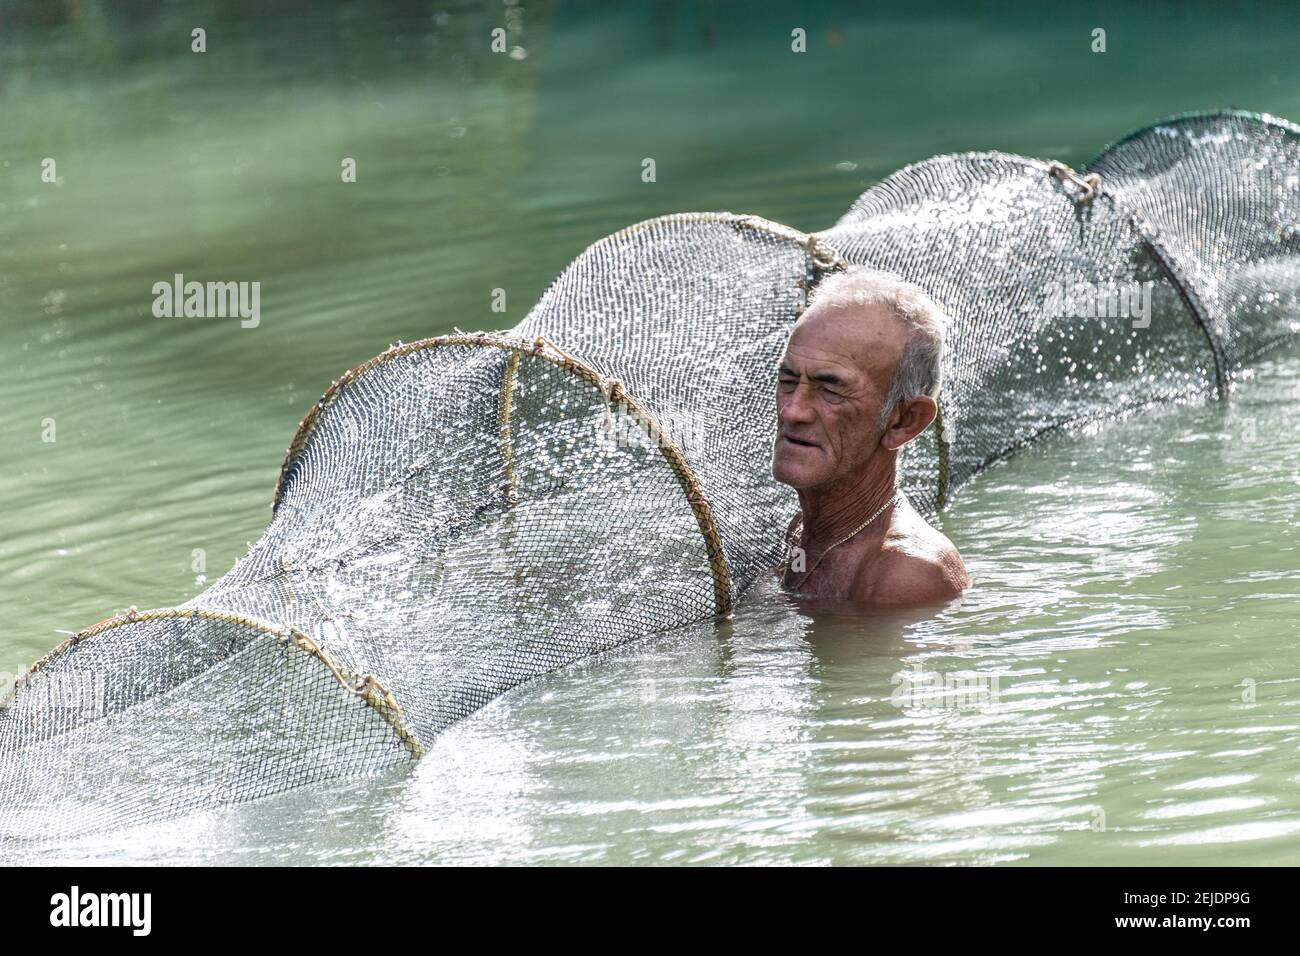 Kubanischer Mann, der eine Garnelenfalle stellt, Lebensstil echter Menschen in Kuba Stockfoto